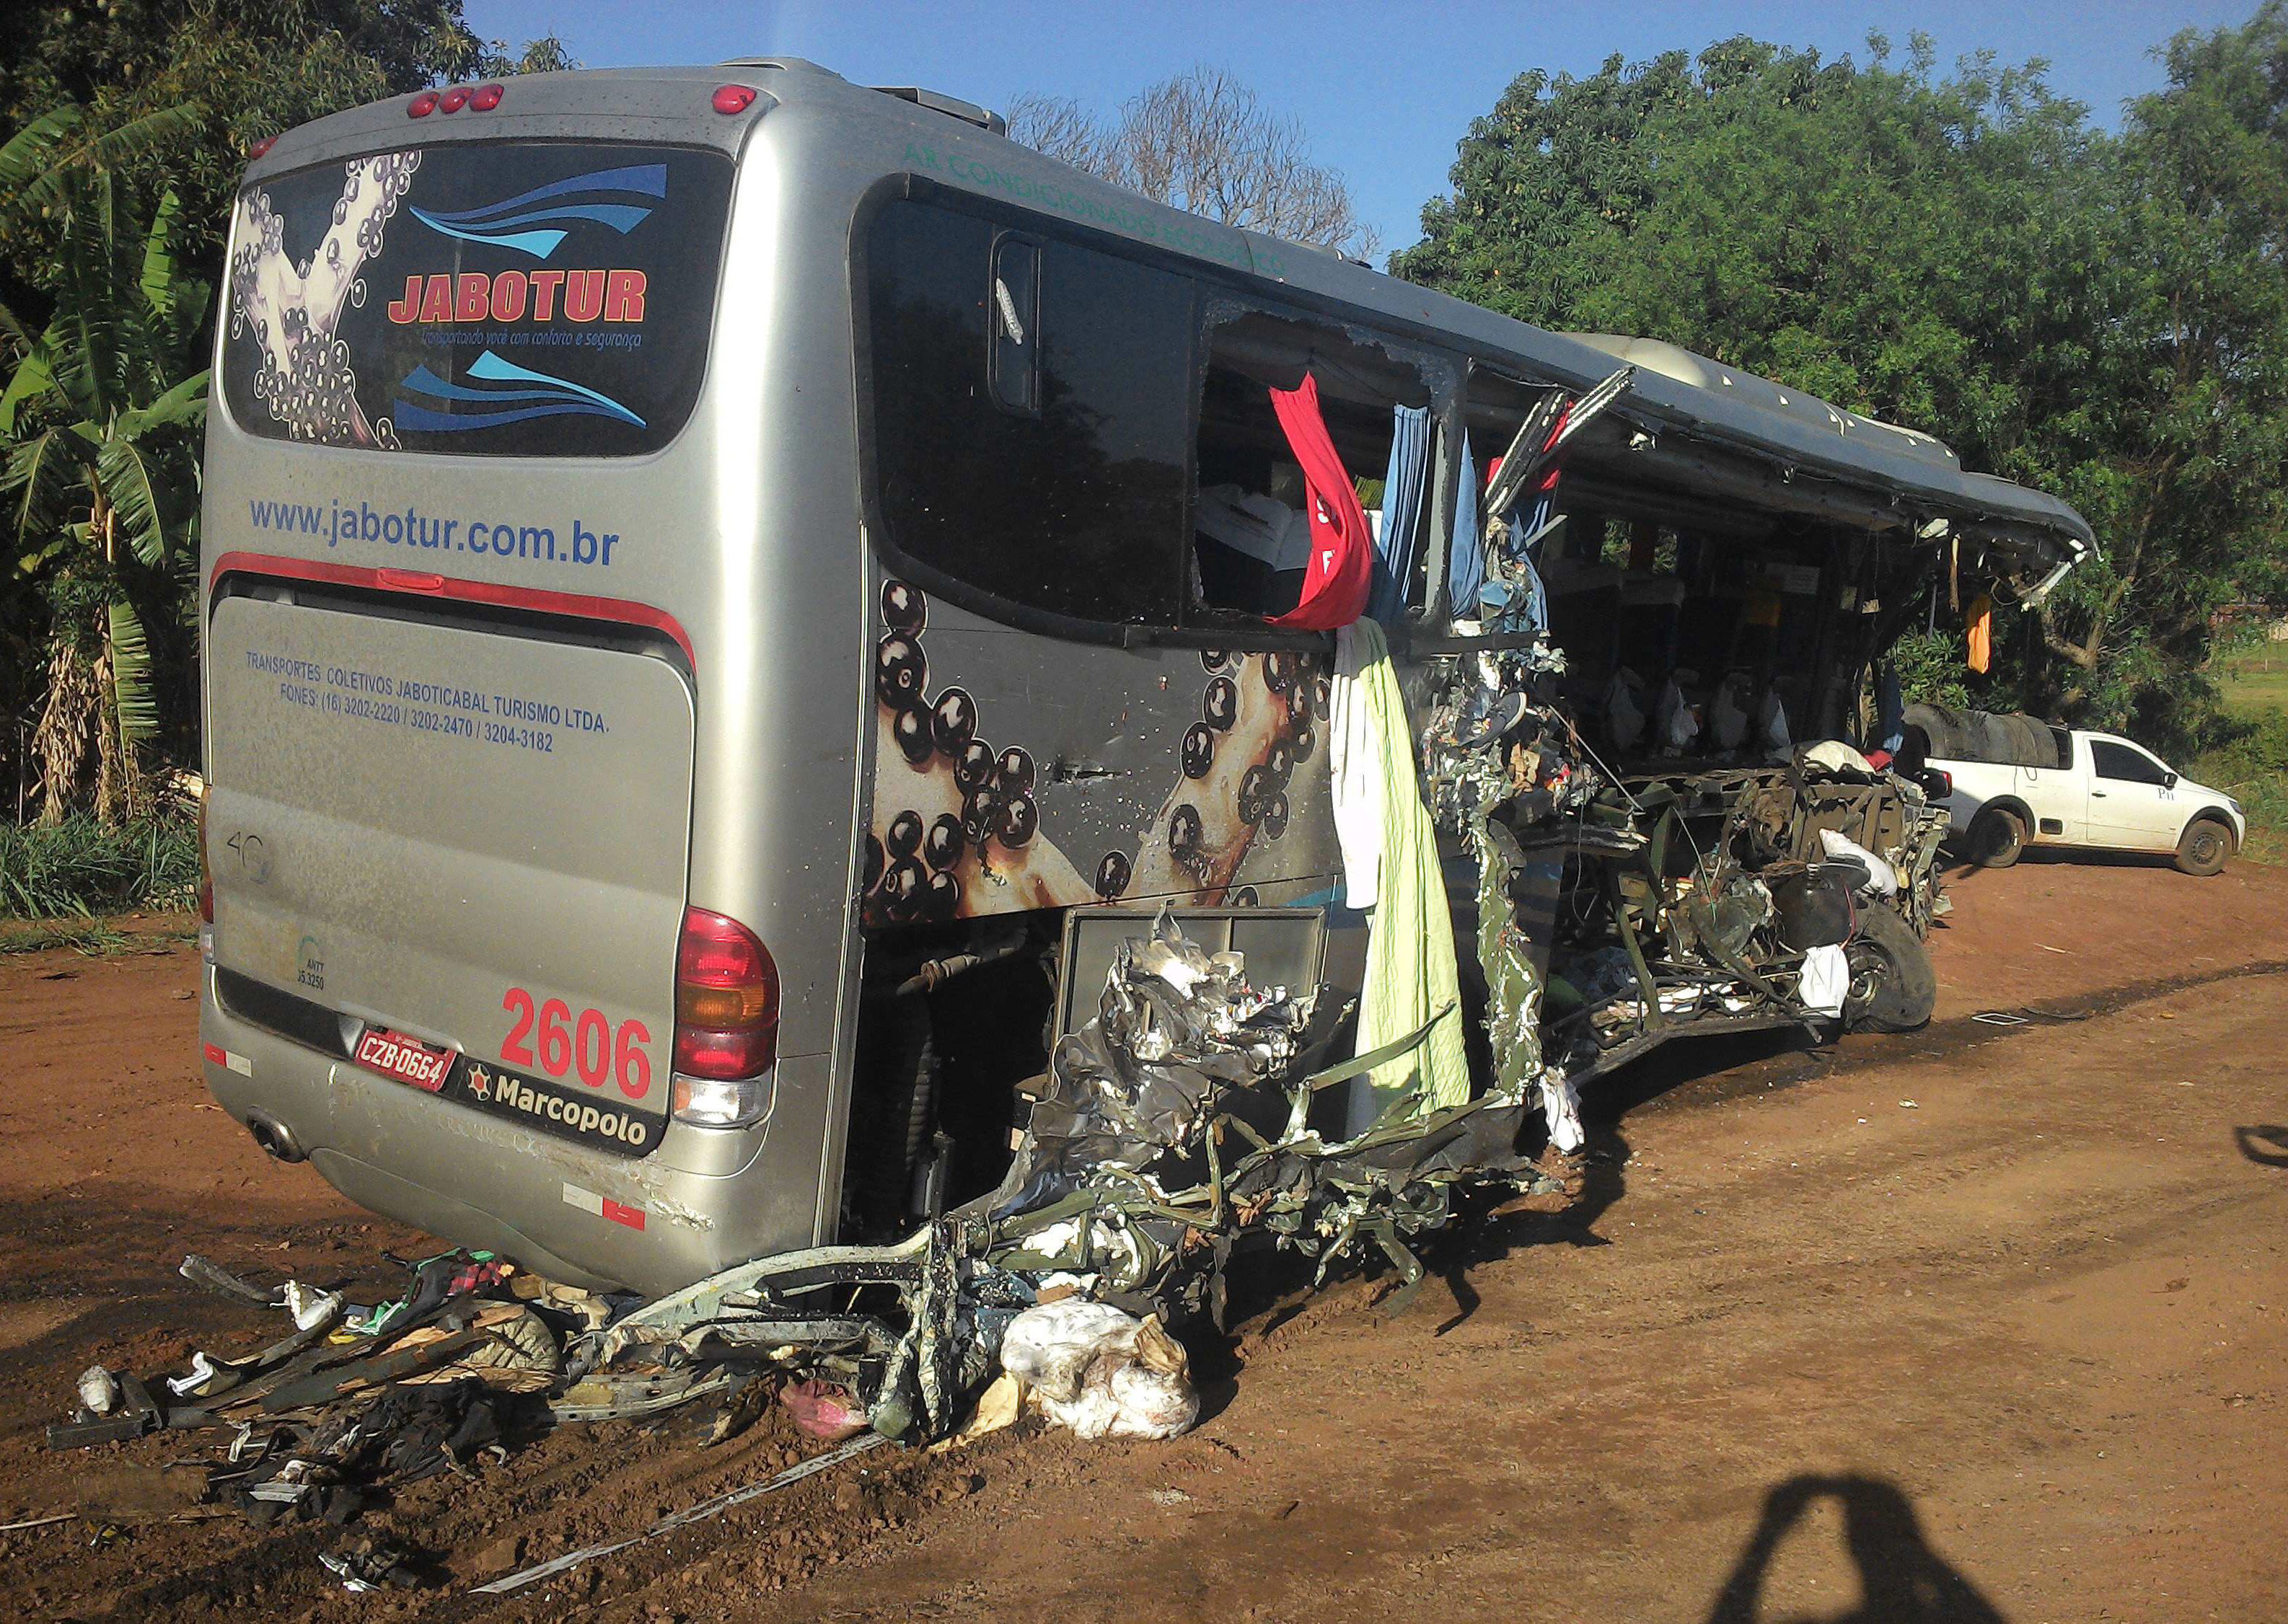 Βραζιλία: Τουλάχιστον 10 νεκροί και 42 τραυματίες σε δυστύχημα με λεωφορείο στο Σάο Πάολο